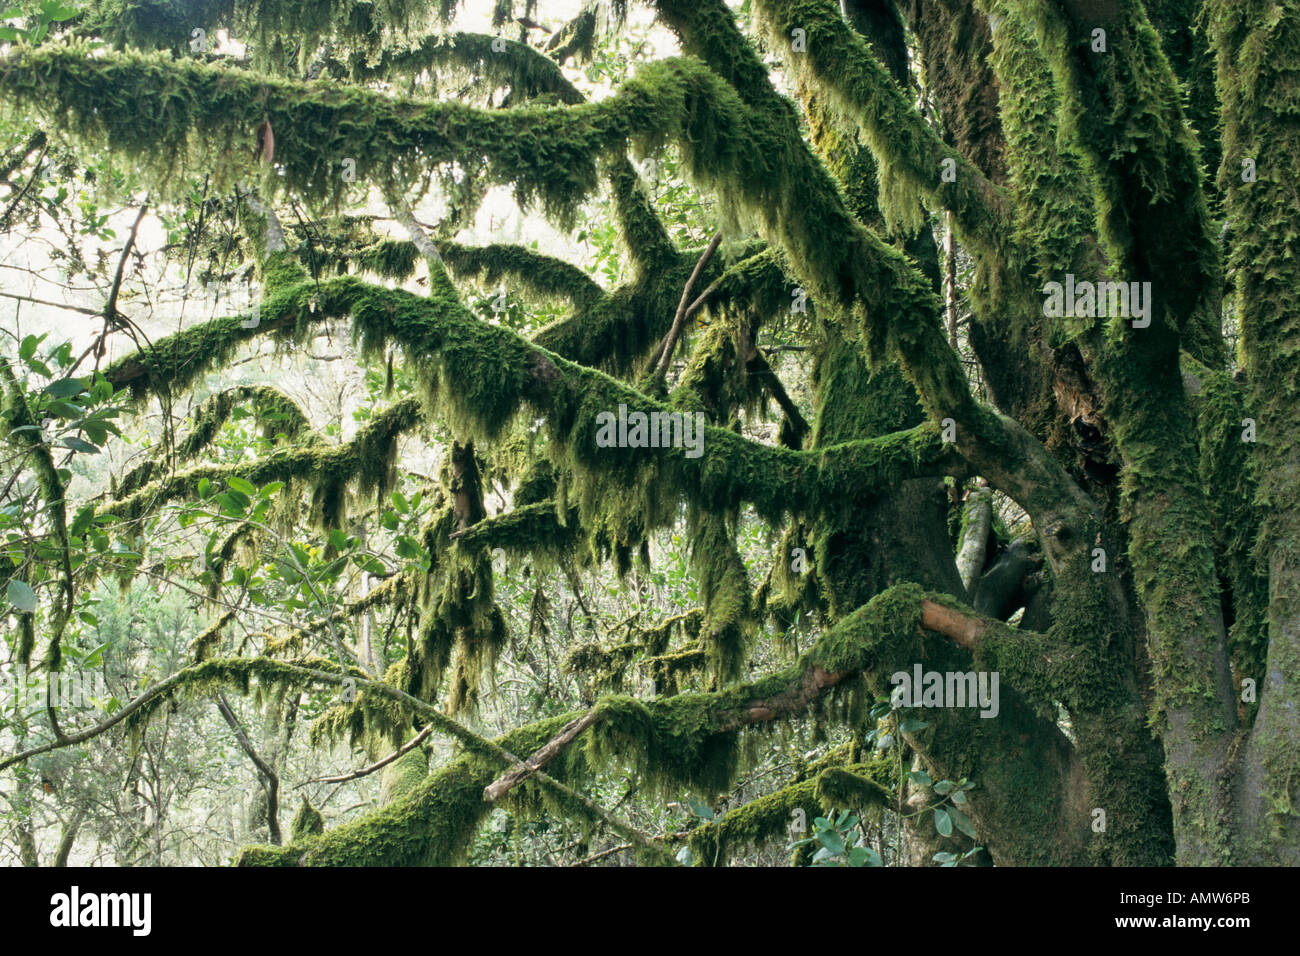 Moss-covered tree, Garajonay National Park, La Gomera, Spain Stock Photo